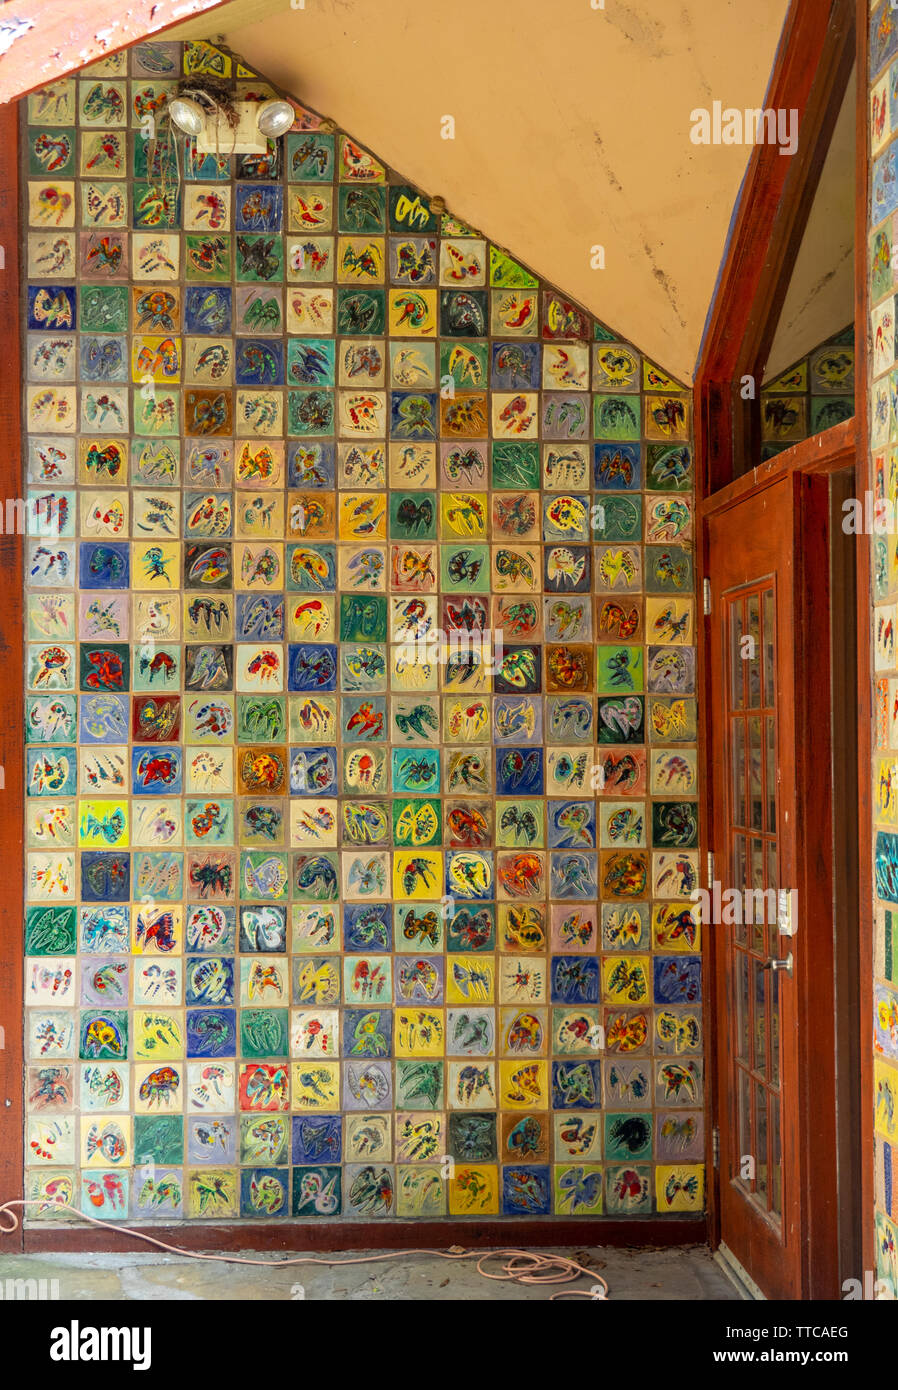 Coloridos azulejos en una pared de la entrada a un edificio. Foto de stock